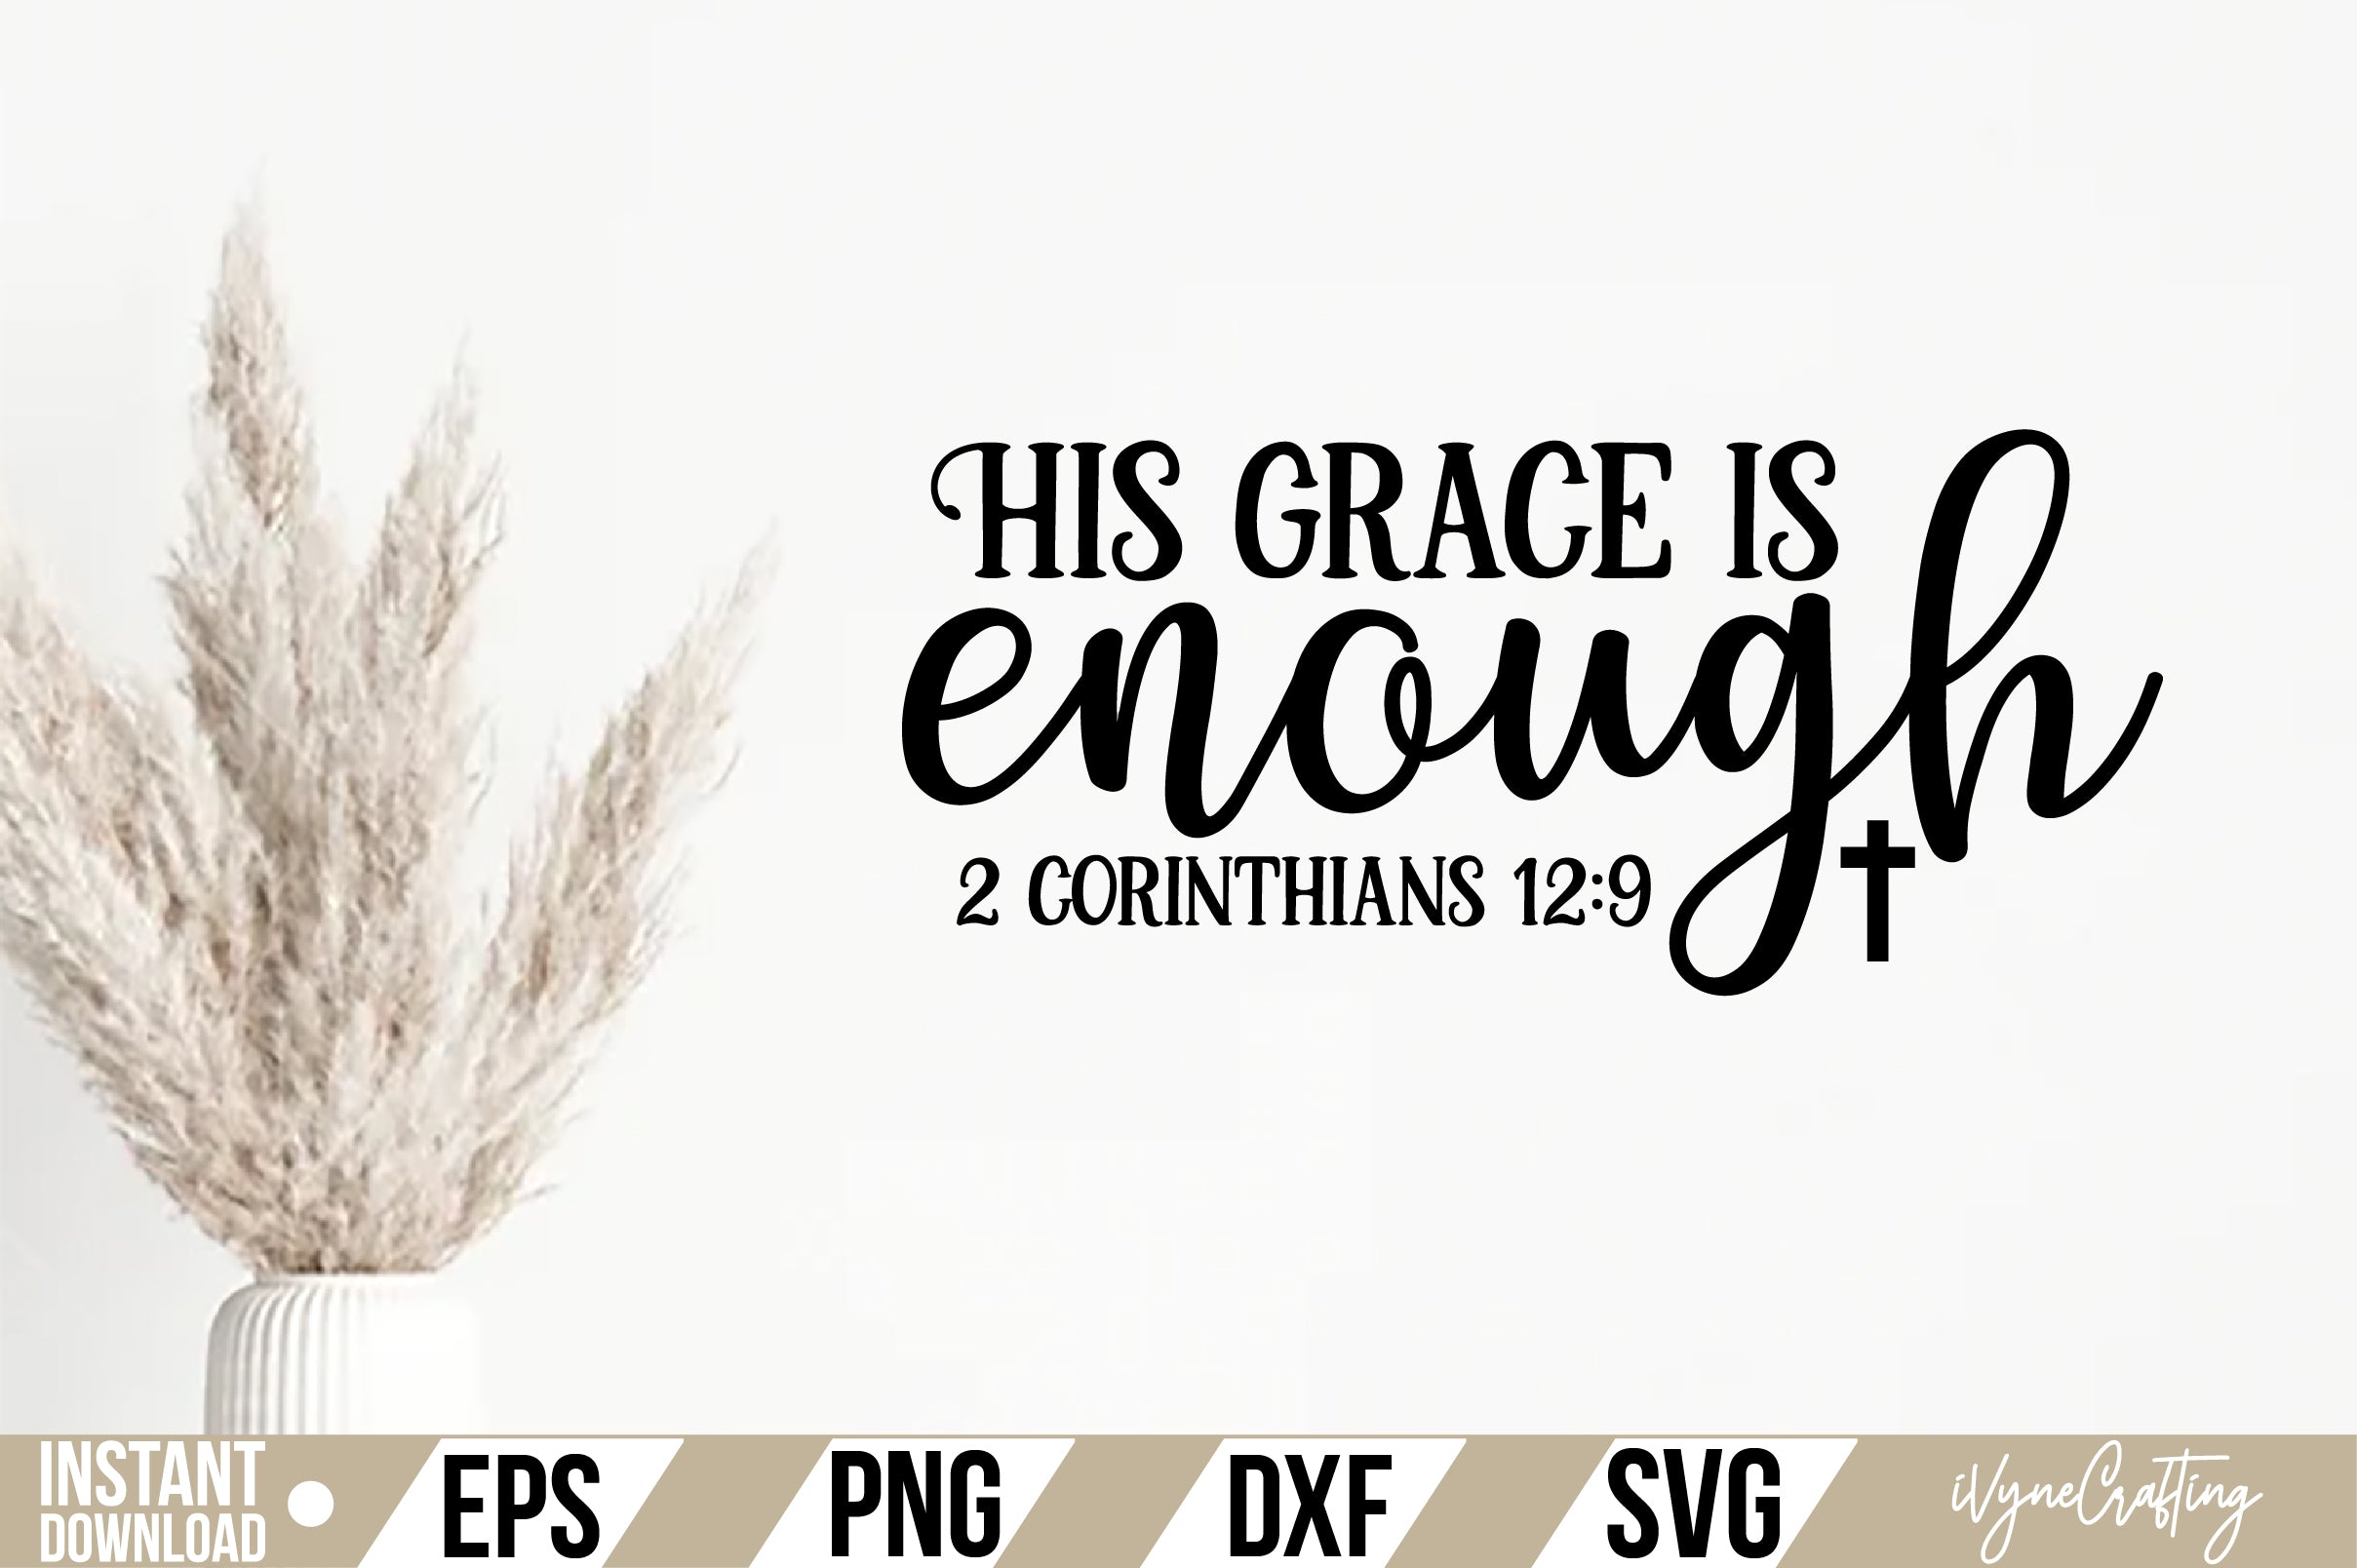 His grace is enough 2 corinthians